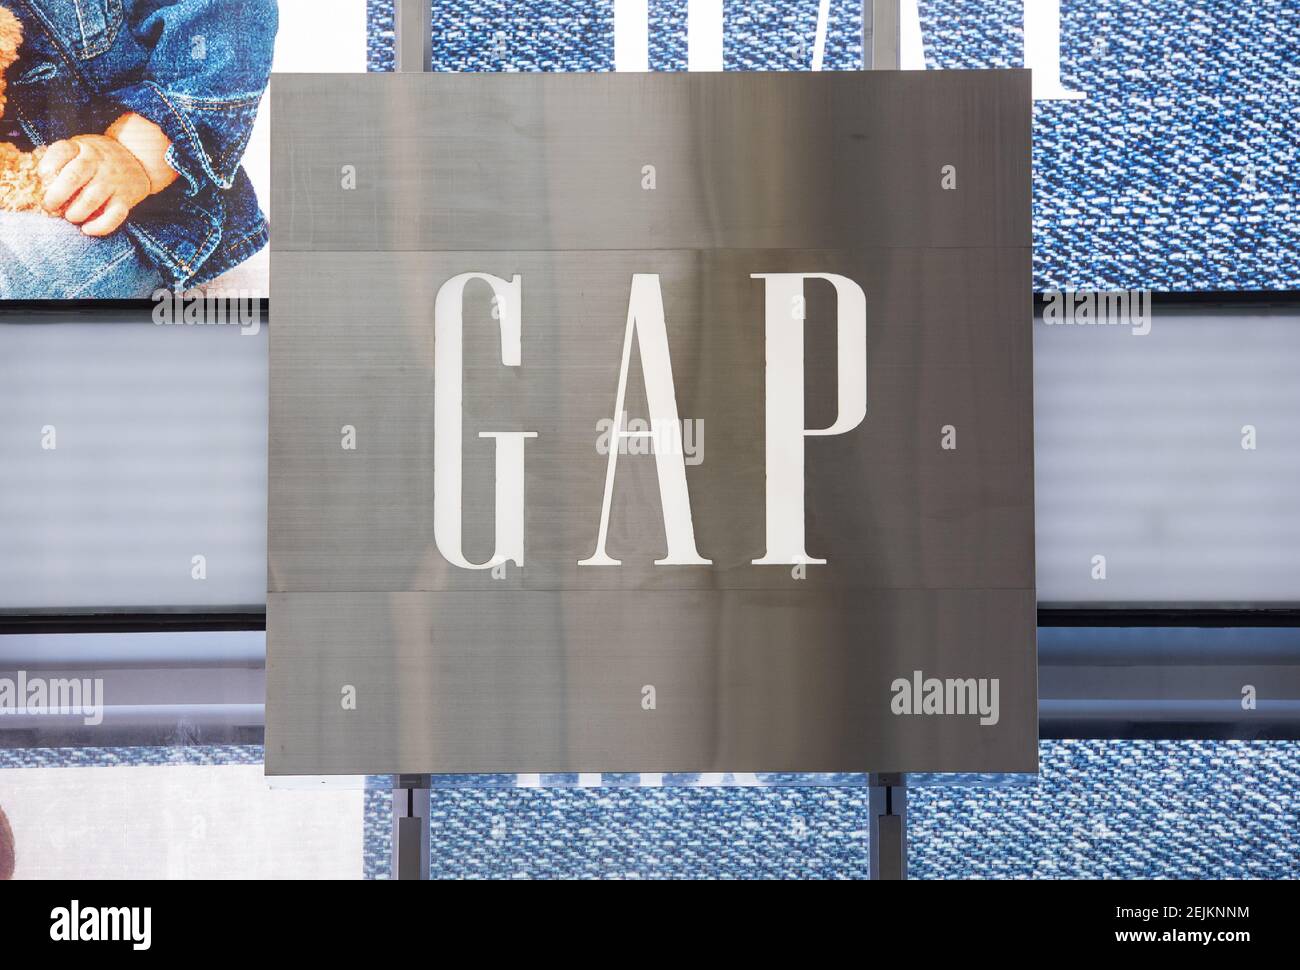 Amerikanische Kleidung und Accessoires Einzelhändler Marke GAP Store und  Logo in Hongkong gesehen. (Foto von Budrul Chukrut / SOPA Images/Sipa USA  Stockfotografie - Alamy